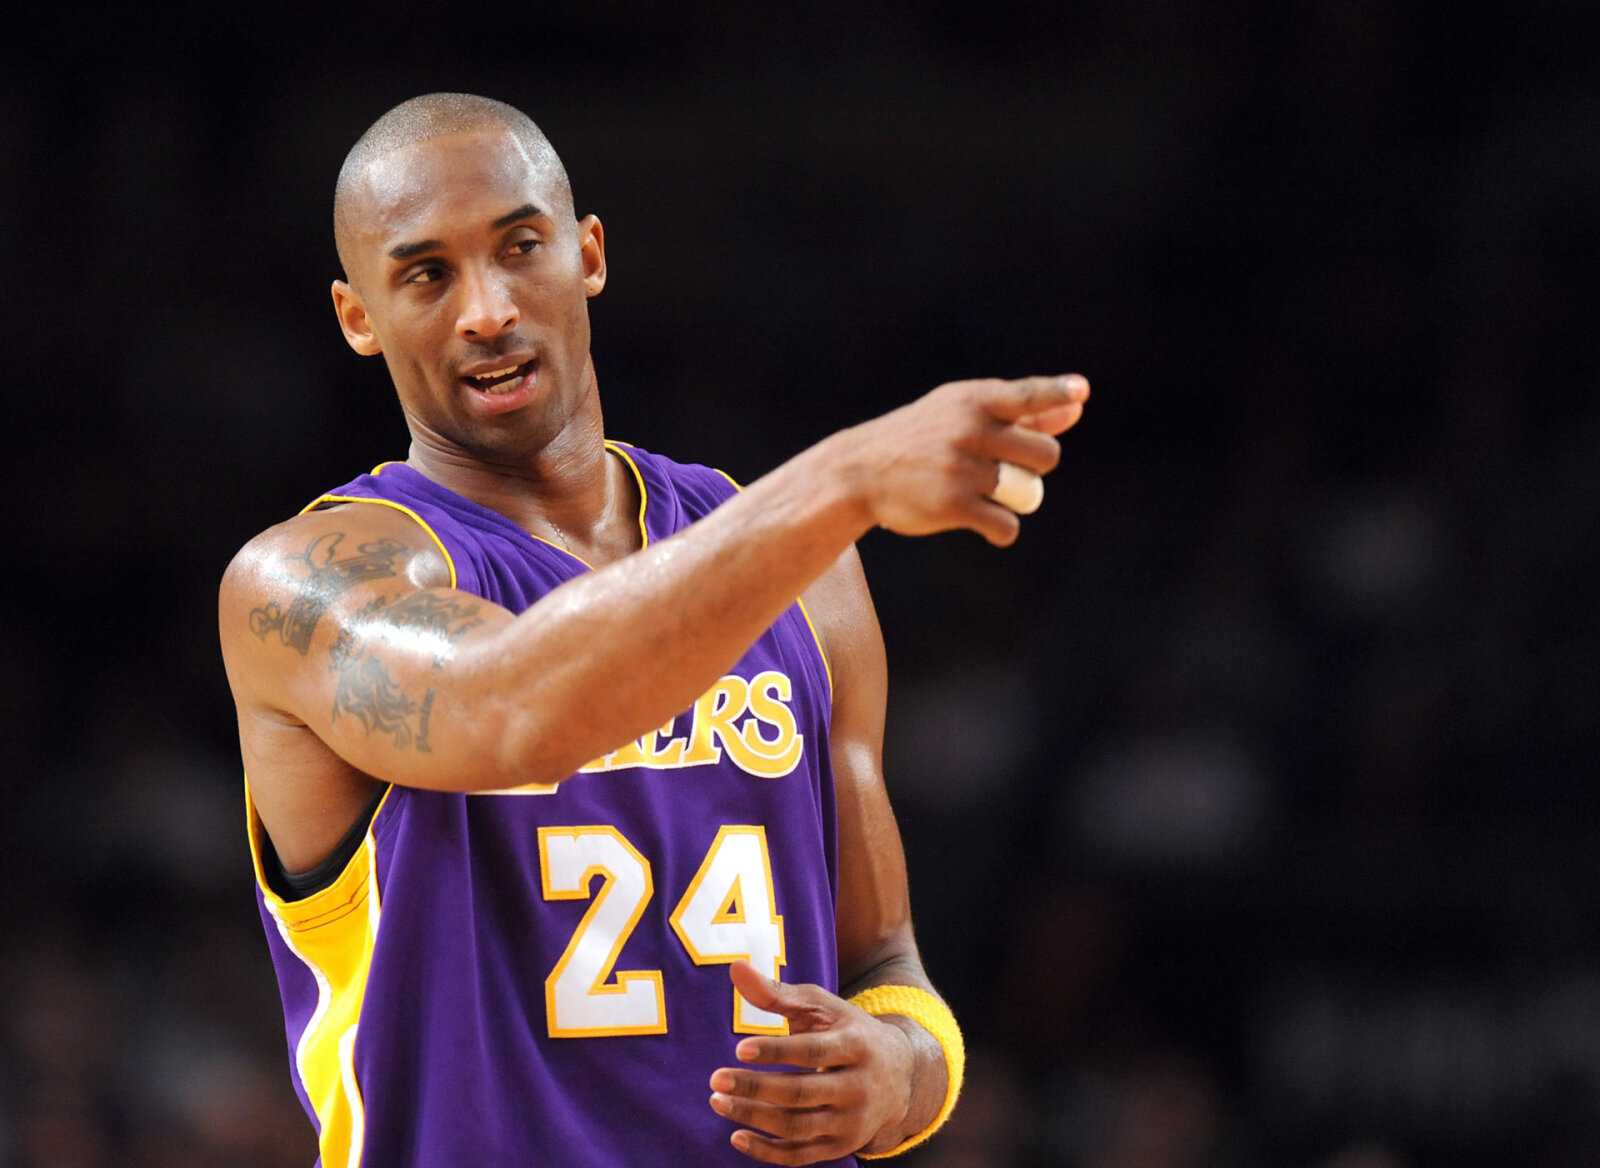 "Ne respectez pas leur éthique de travail": l'entraîneur adjoint des Lakers révèle pourquoi Kobe Bryant ne faisait pas confiance à ses coéquipiers